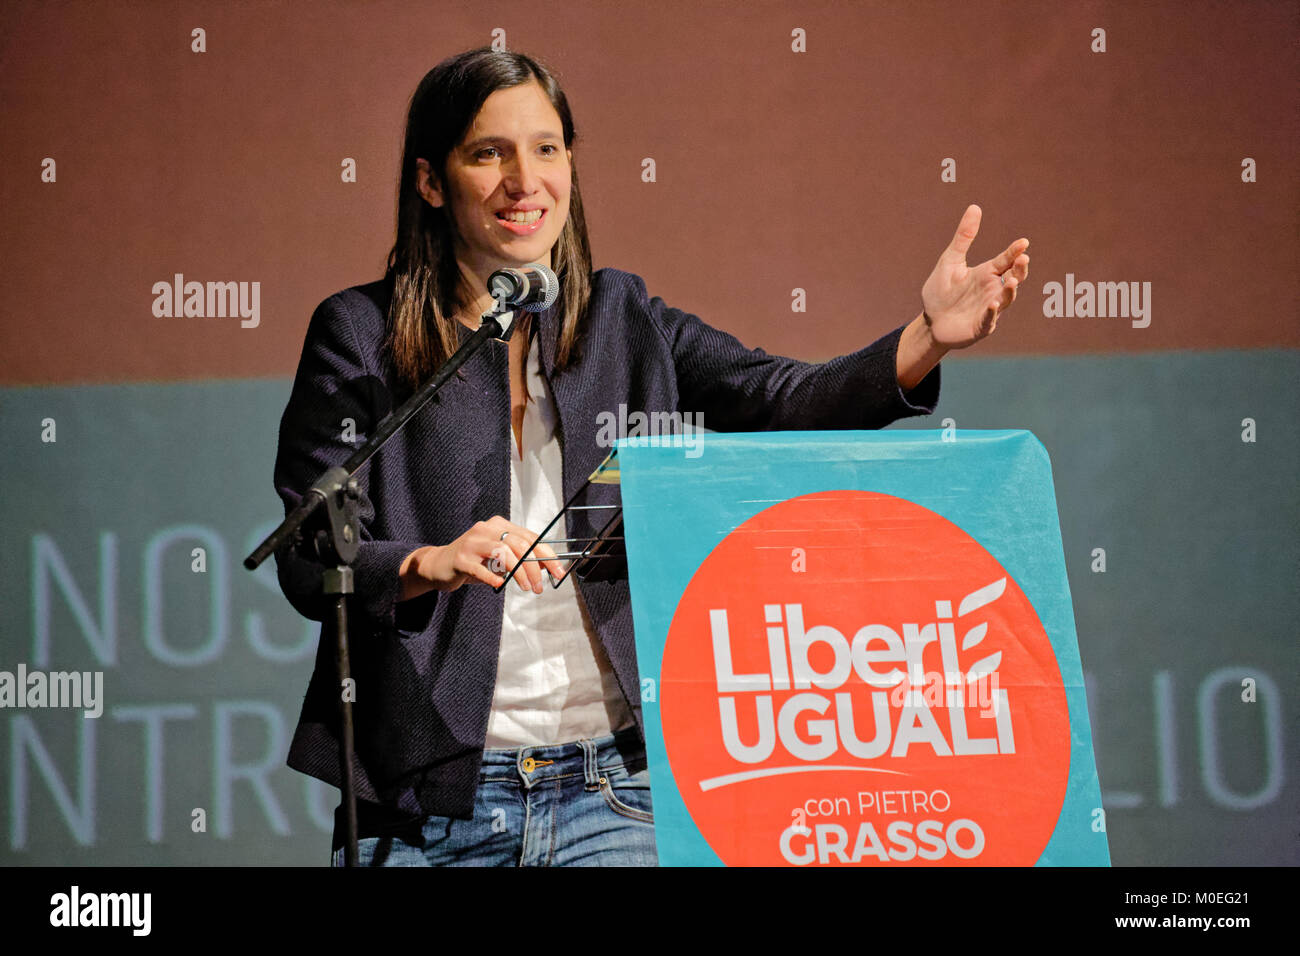 Torino, Italien. 21. Januar 2018. Mdep Elly Schlein sprechen bei "Liberi e Uguali" der Partei, die den Wahlkampf zu öffnen. MLBARIONA/Alamy leben Nachrichten Stockfoto